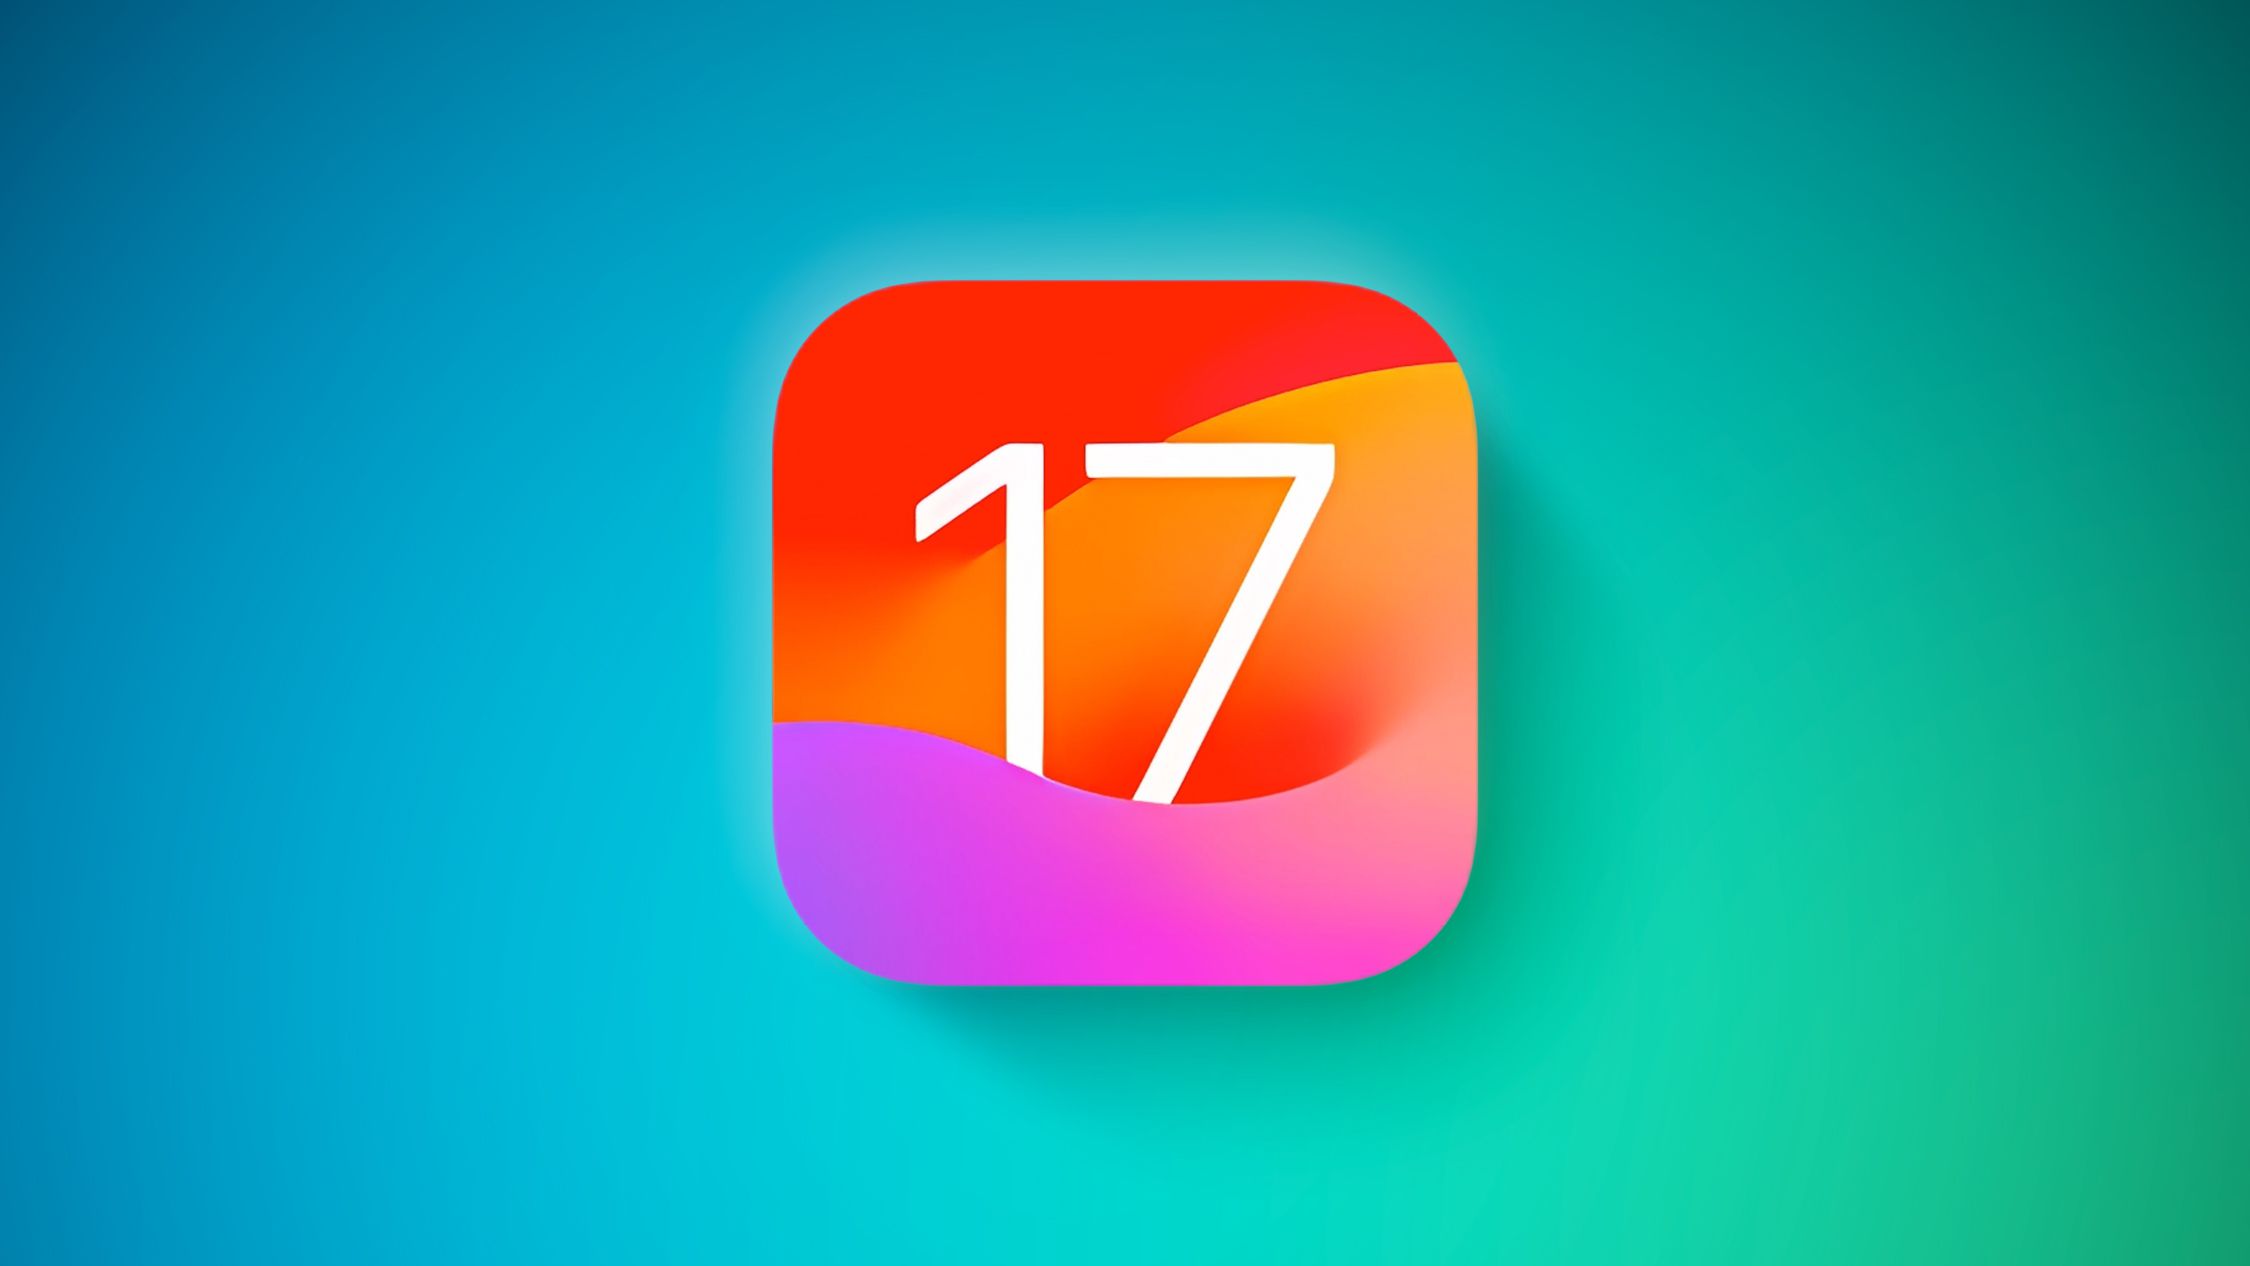 Cositas de iOS 17: Sugerencias de Siri mejoradas, temporizadores múltiples, búsqueda visual de recetas y más